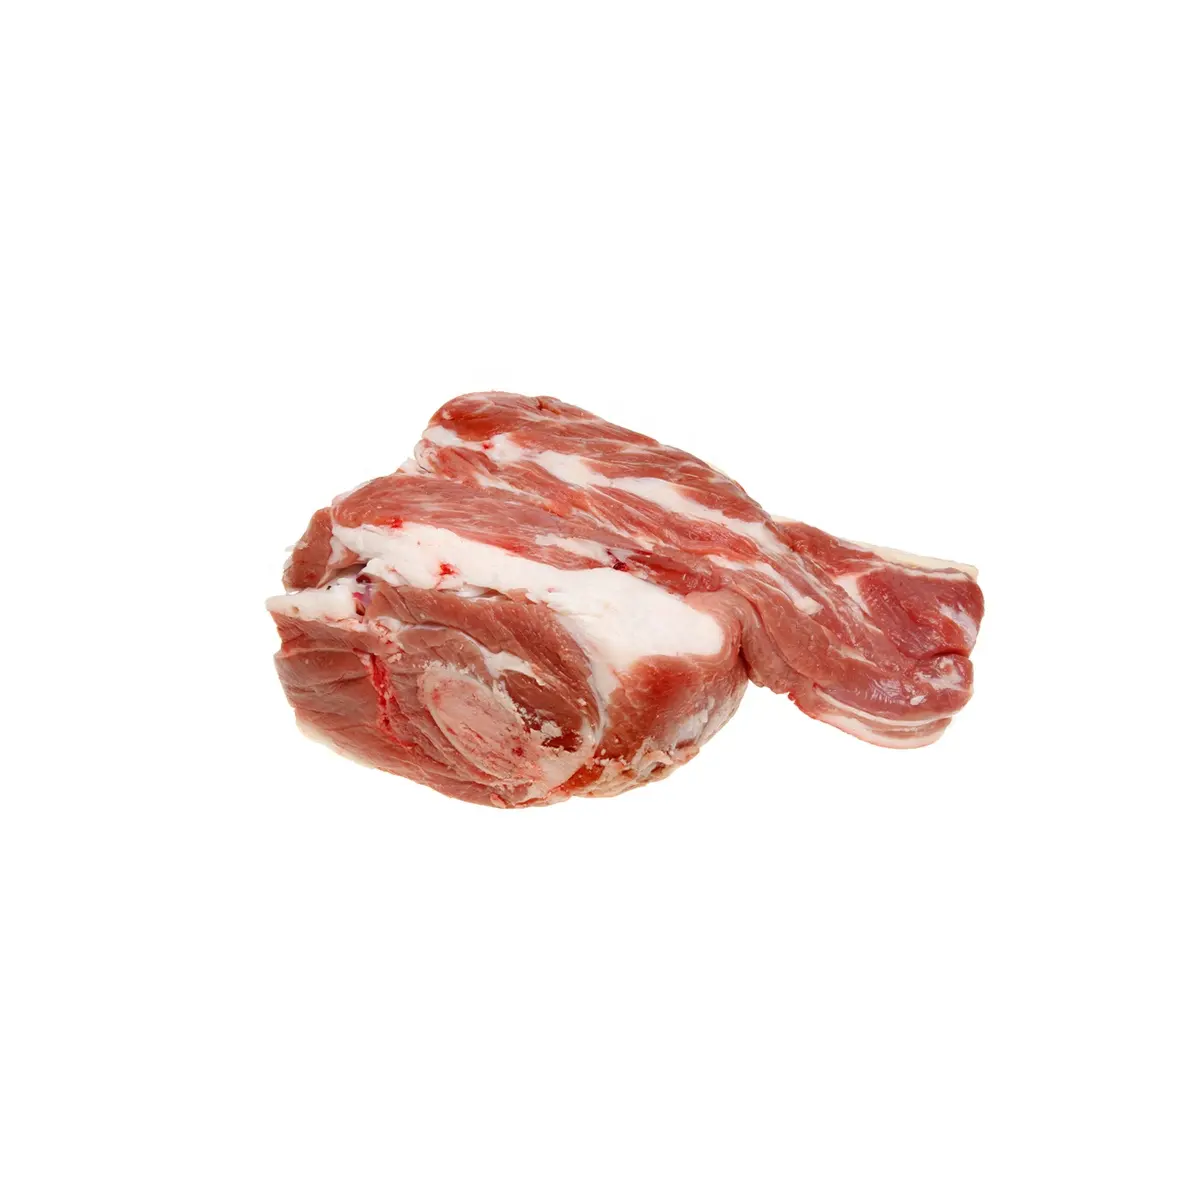 Grosir berbagai bagian daging domba beku, daging domba beku segar kualitas tinggi daging domba tanpa tulang